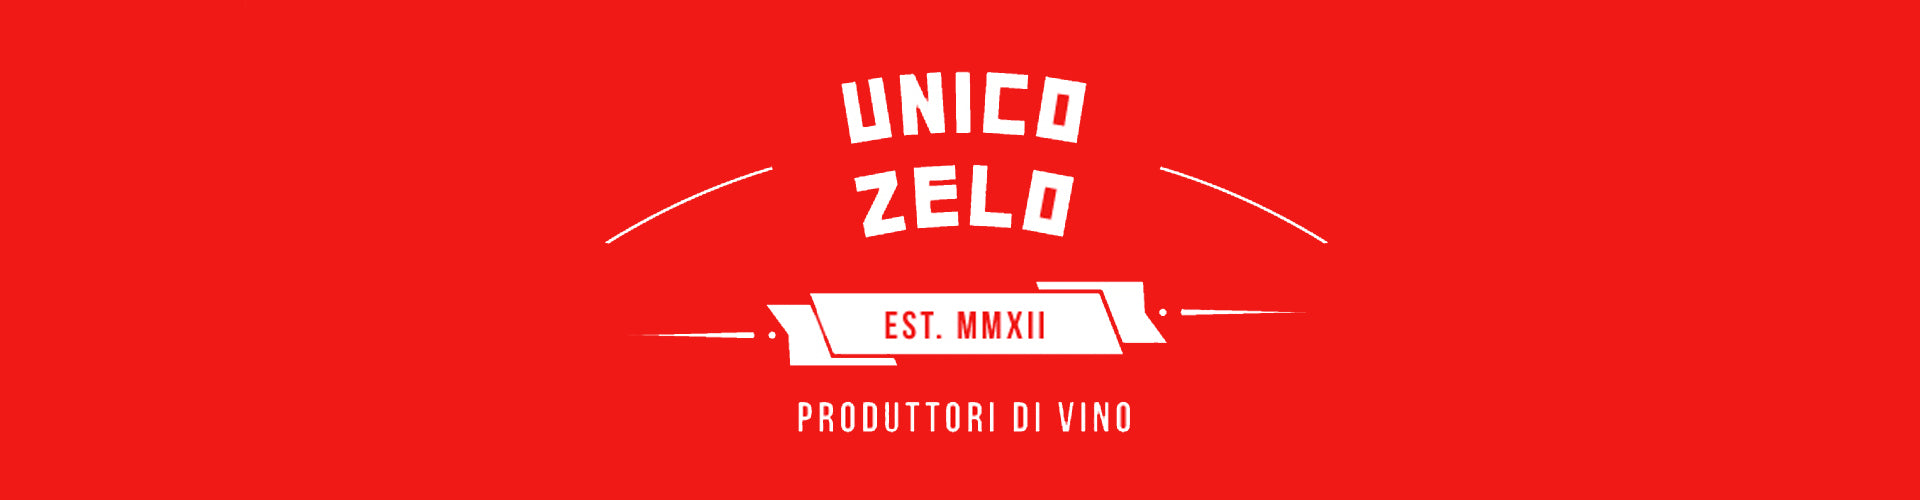 Unico Zelo Logo Banner